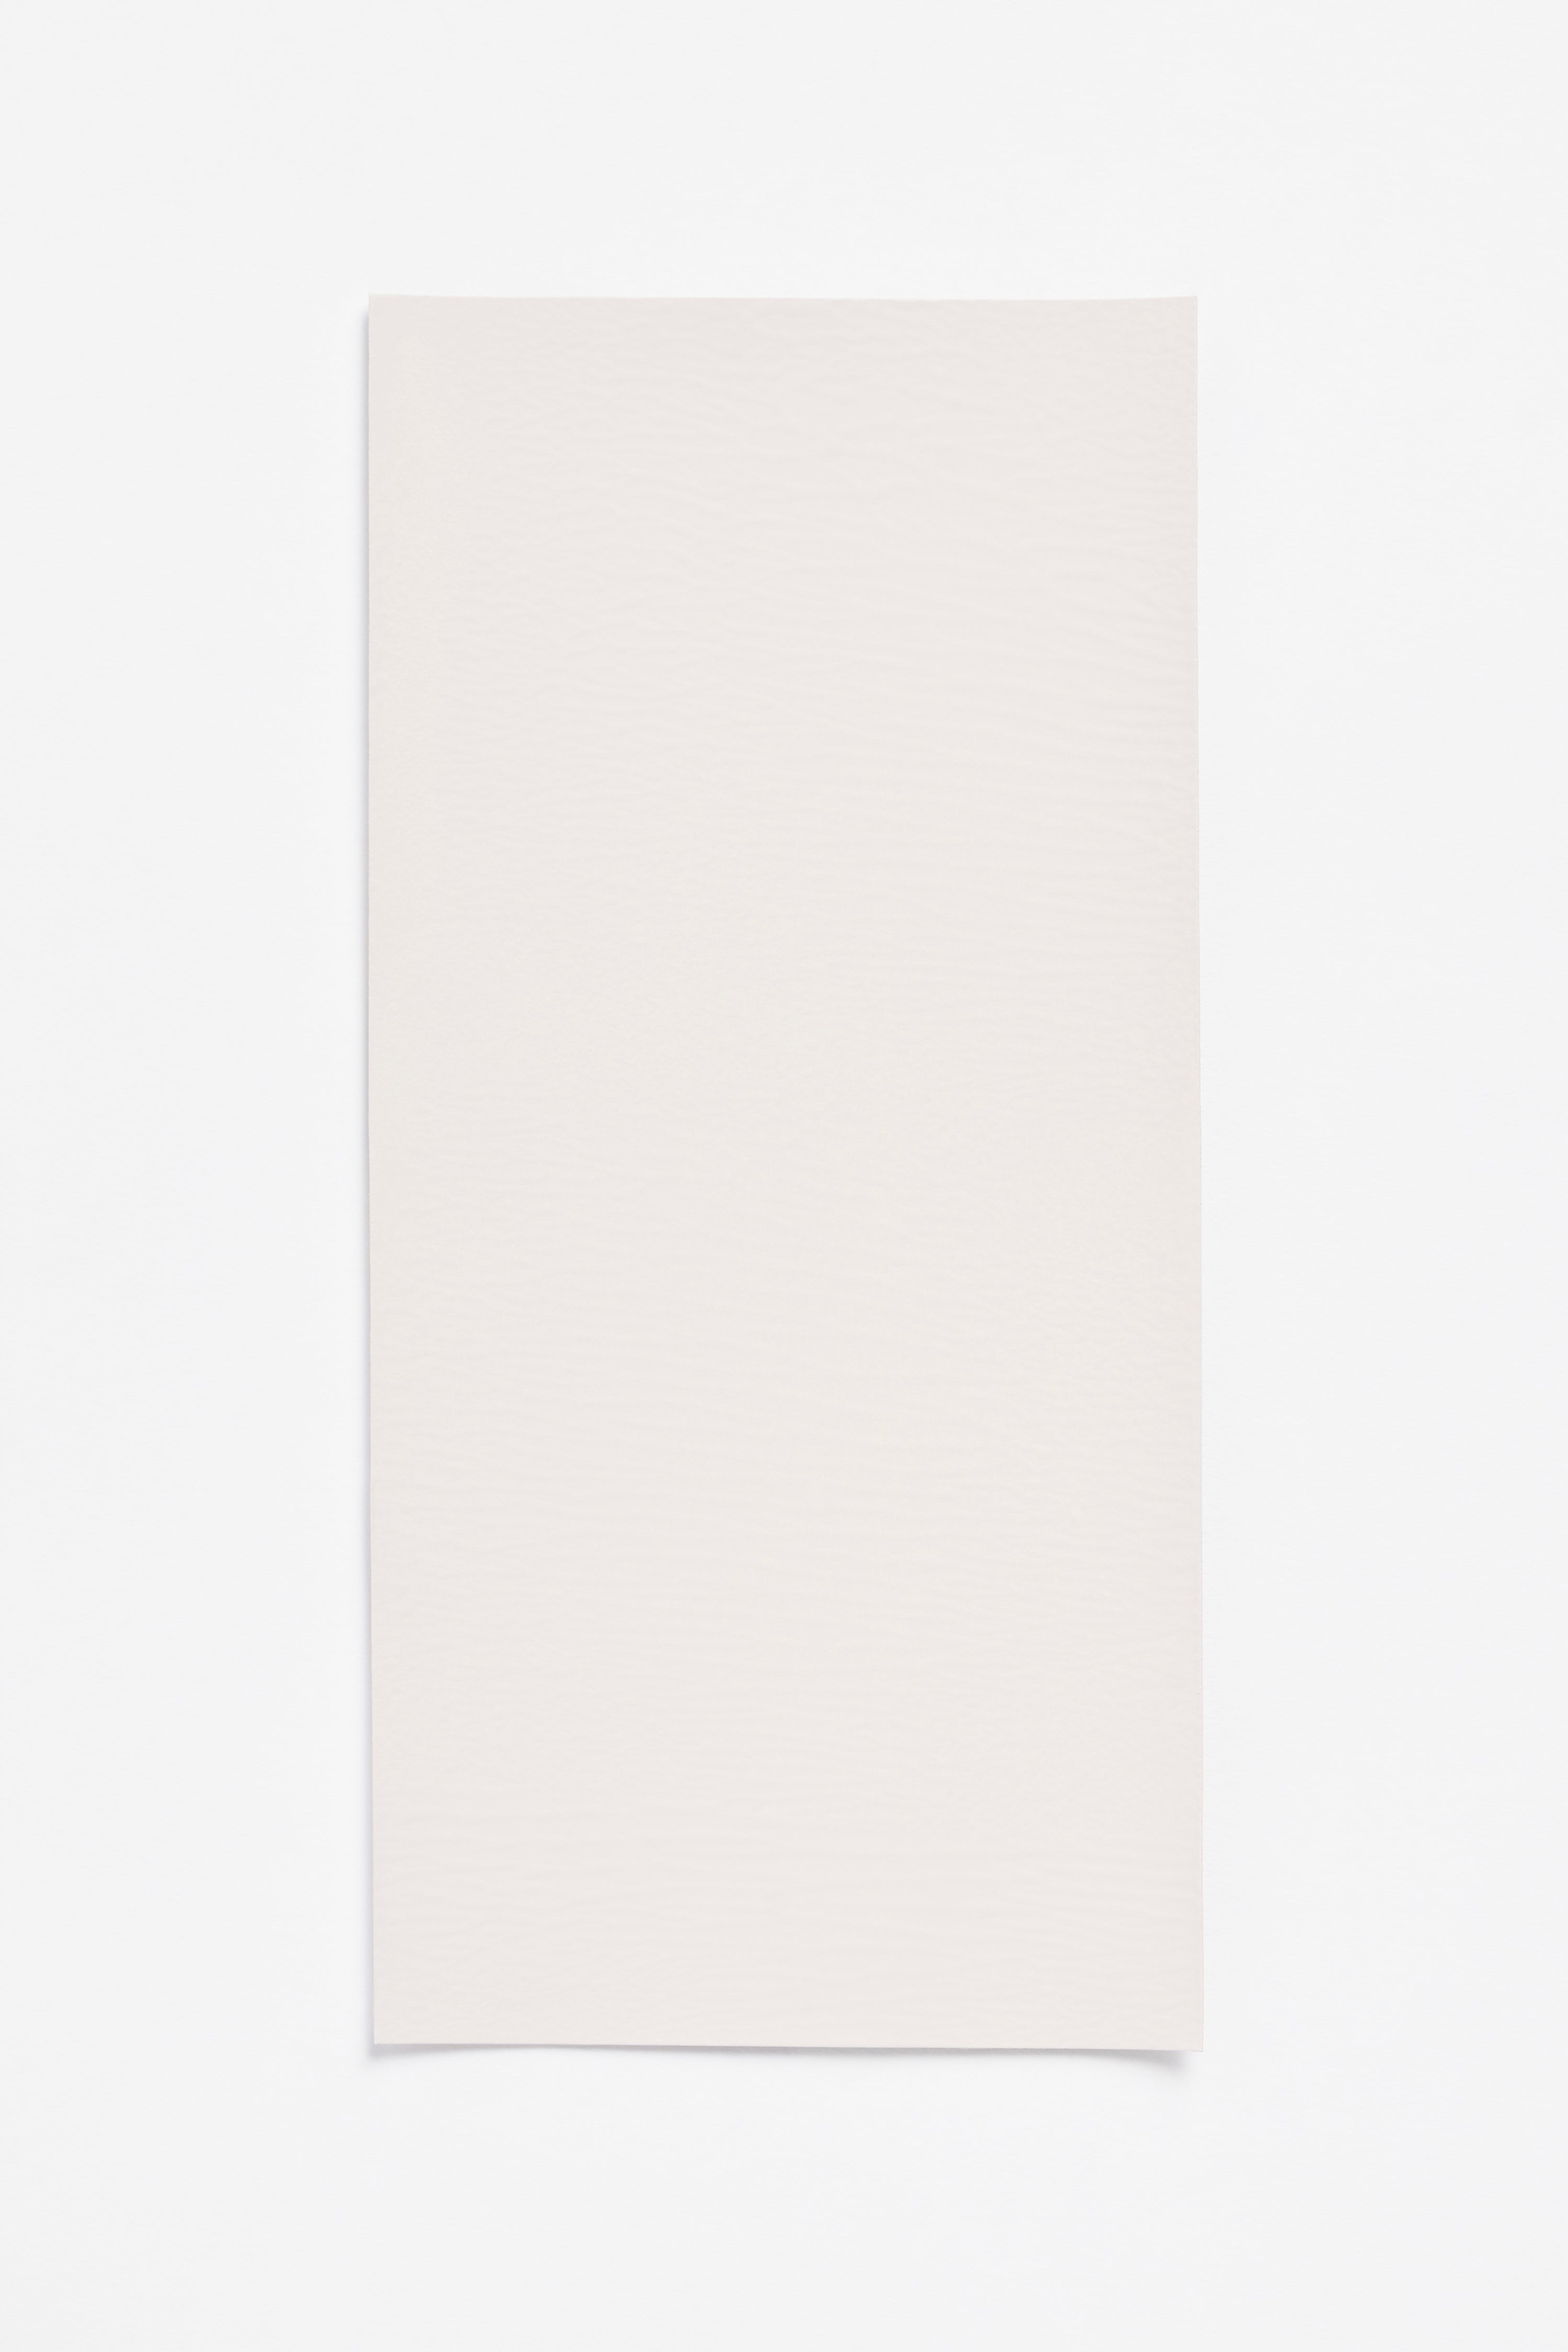 Pale — a paint colour developed by Yvonne Koné for Blēo